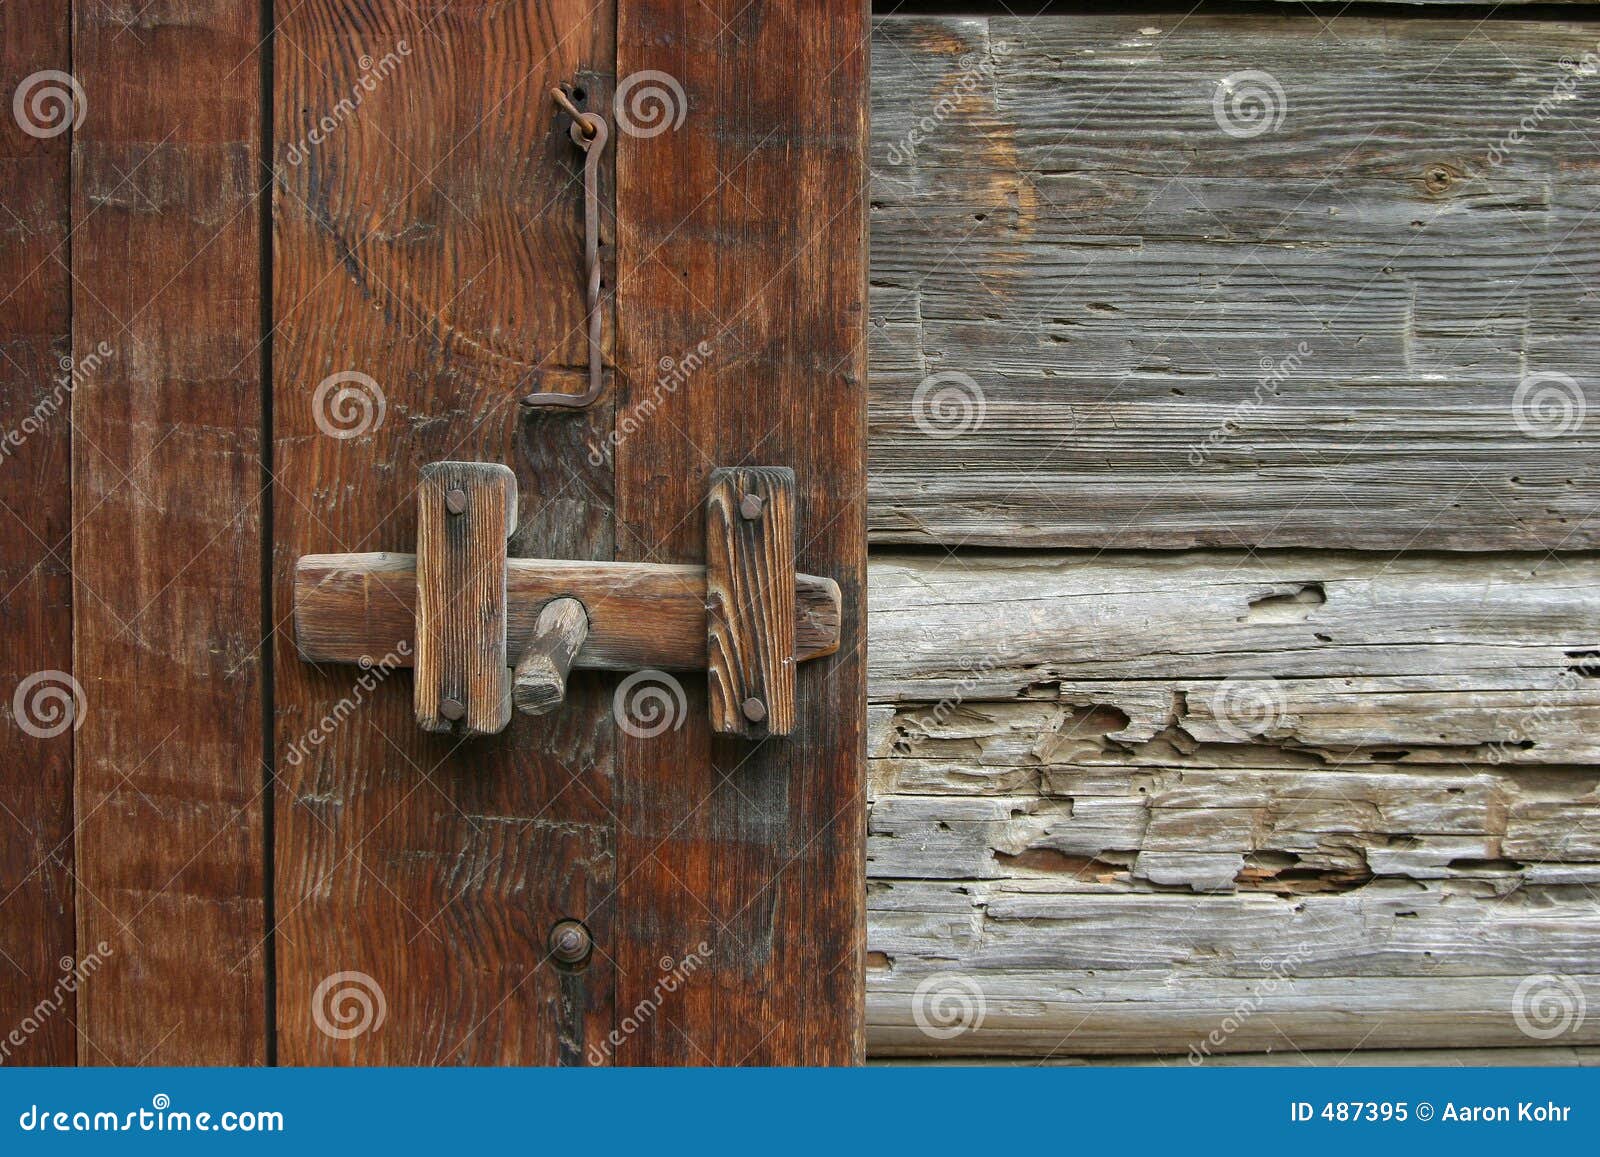 Rustic Door Latch stock image. Image of retro, opening 